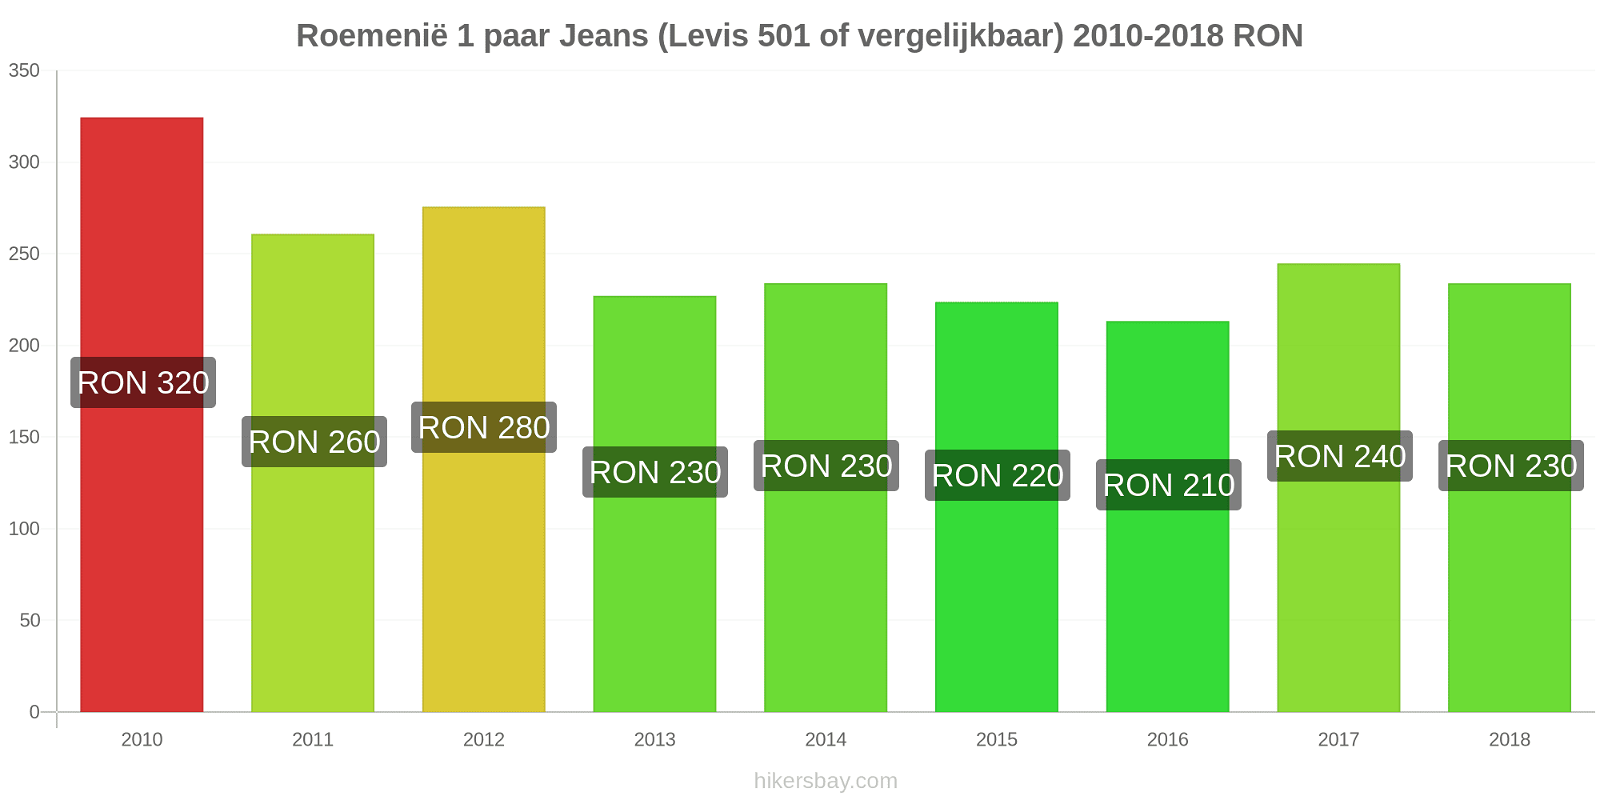 Roemenië prijswijzigingen 1 paar jeans (Levis 501 of vergelijkbaar) hikersbay.com